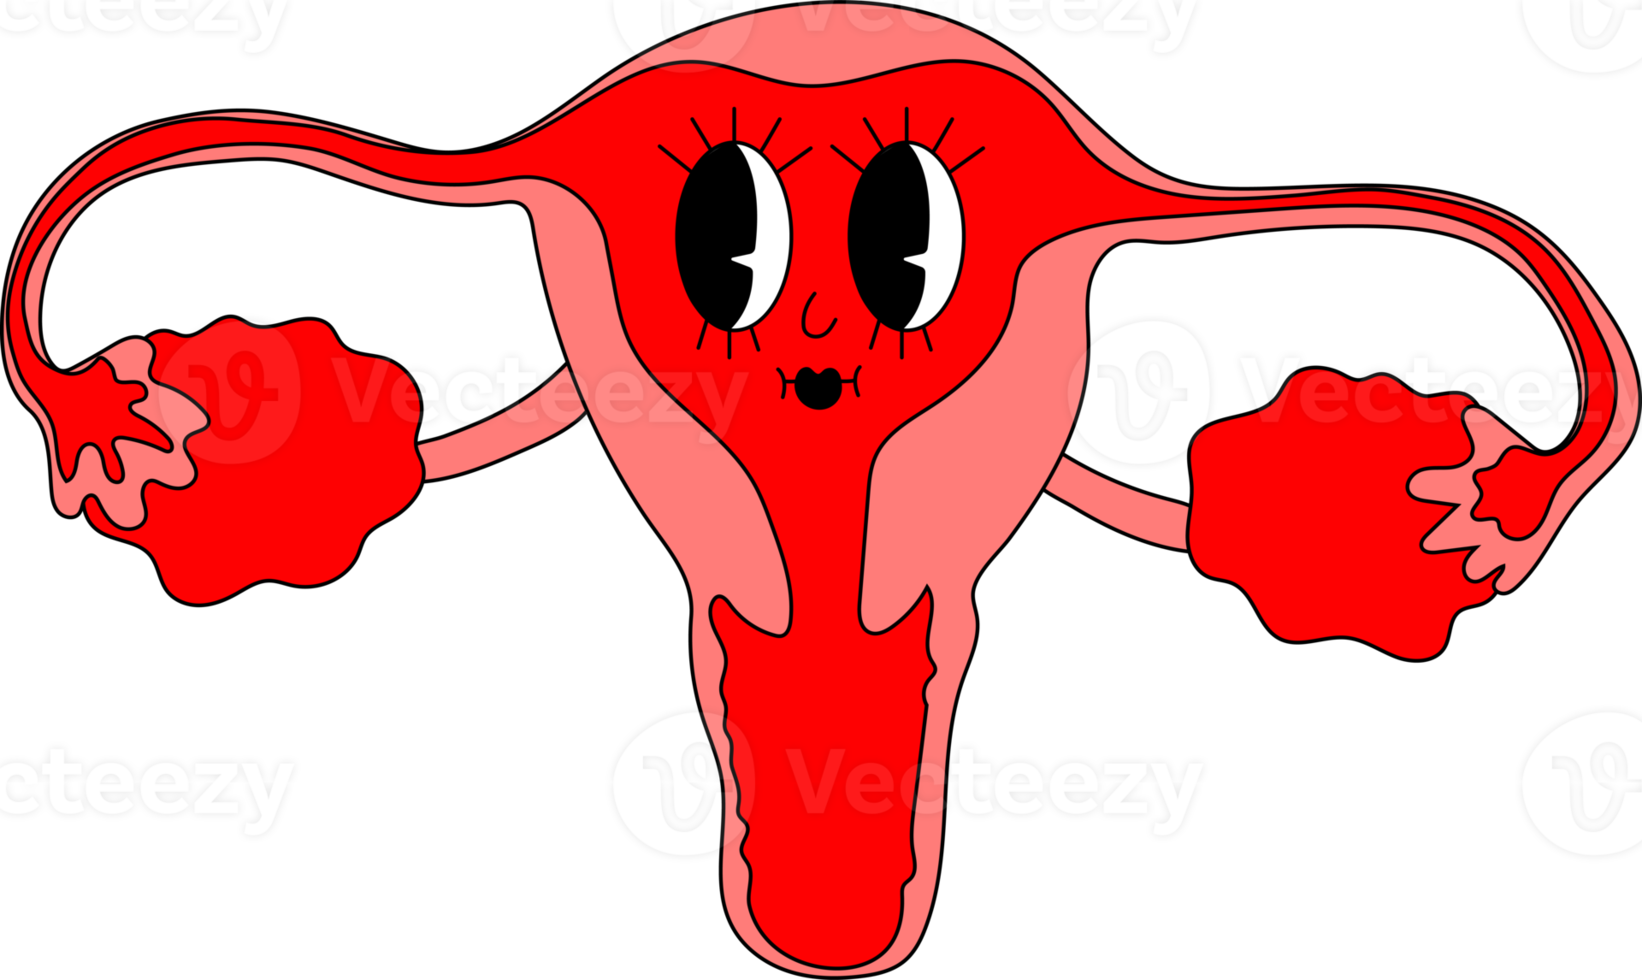 personaje de mascota divertido retro -. Estilo de animación antiguo de los años 40, 50 y 60. órgano carácter sistema reproductor femenino útero cérvix ovarios y trompas de Falopio anatomía biología medicina. png